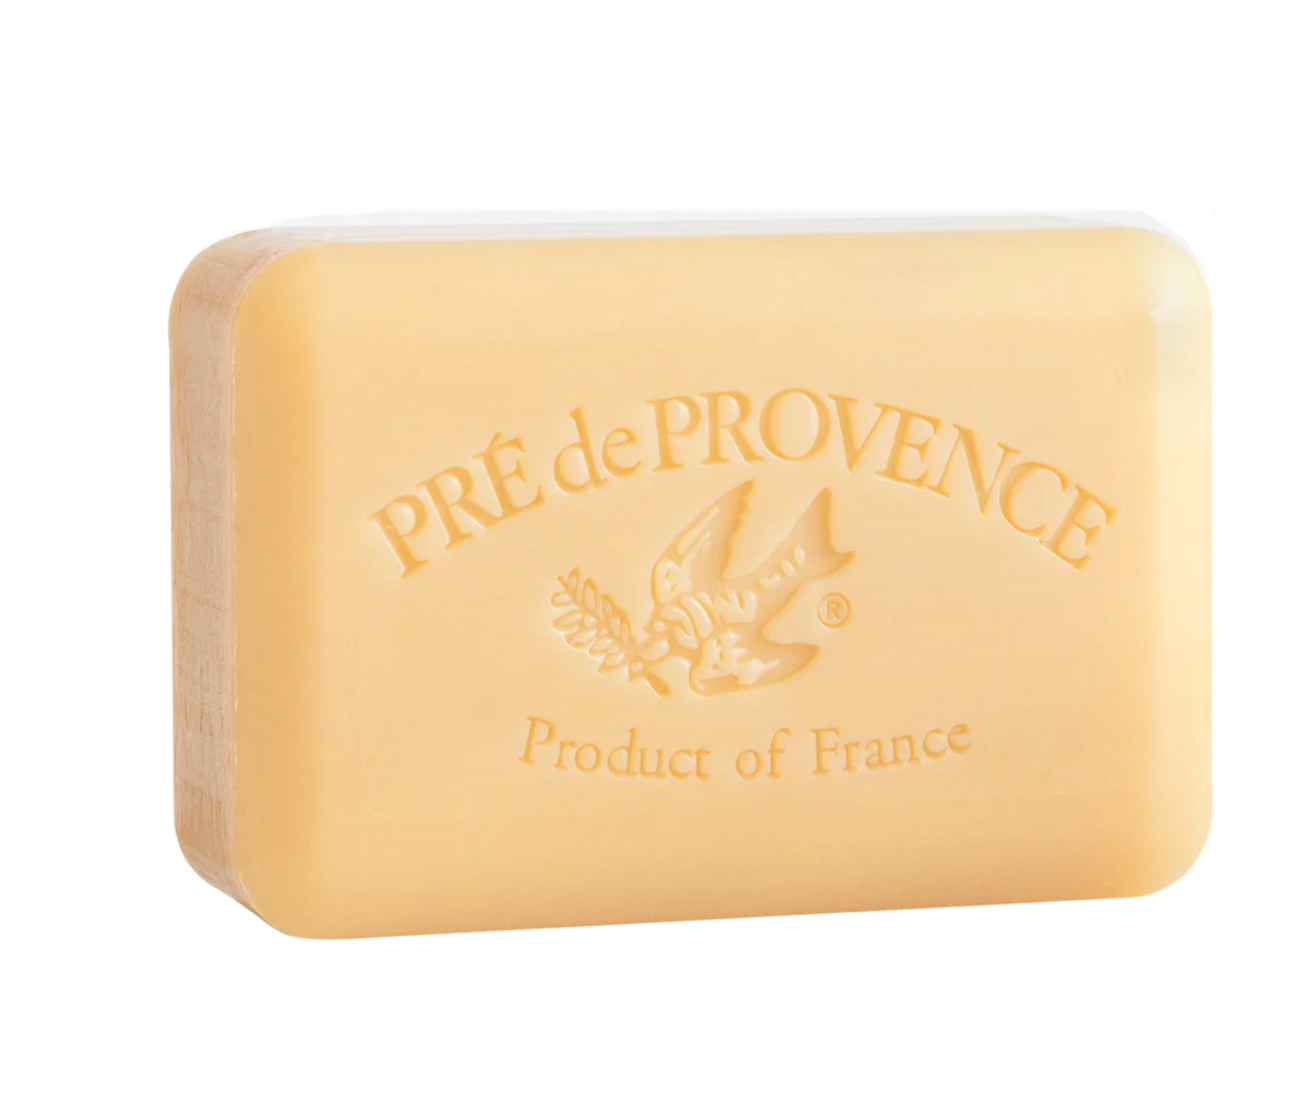 Sandalwood soap bar by Pré de Provence